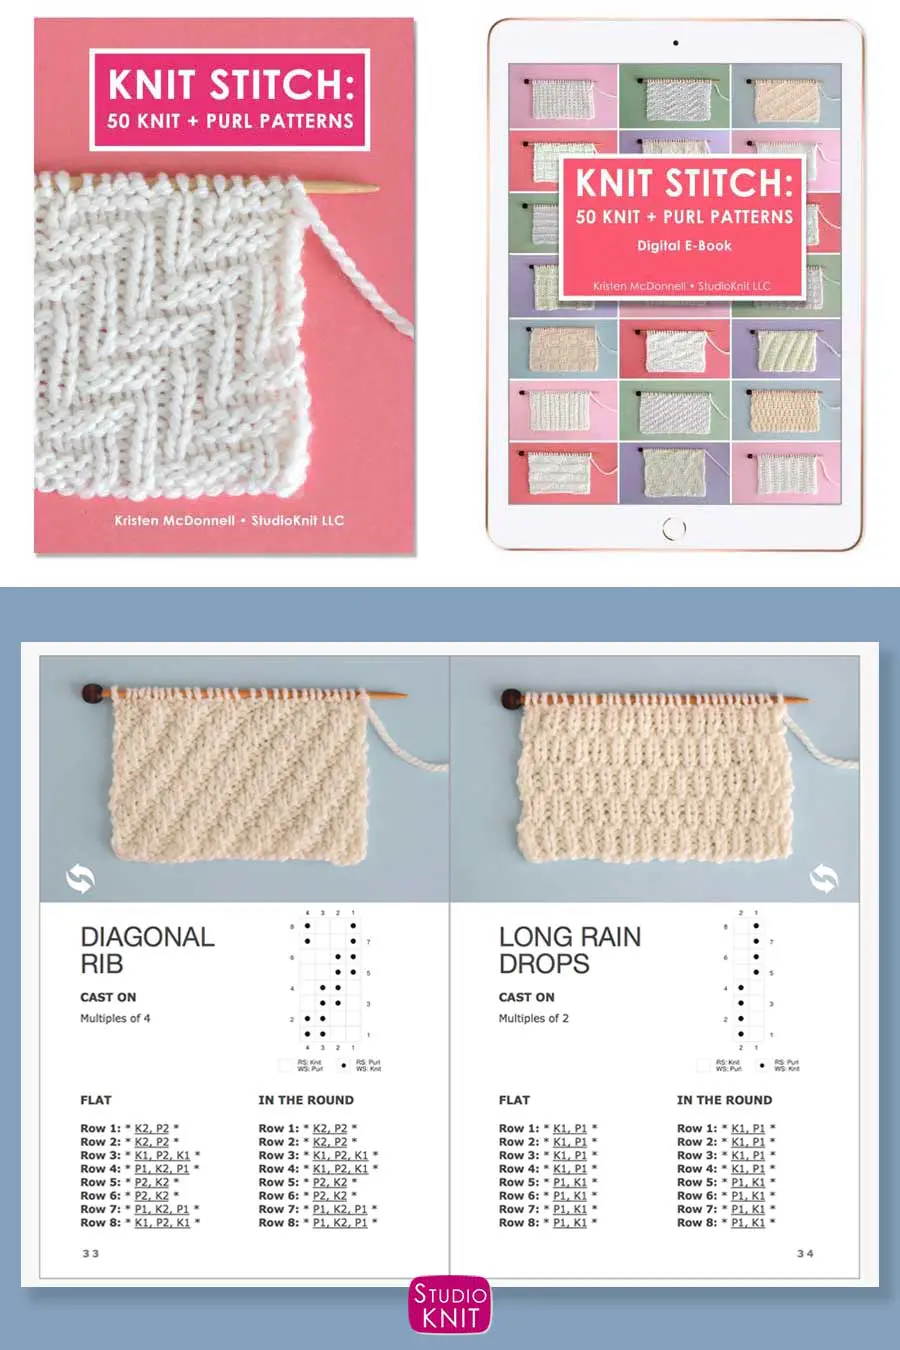 Knit Stitch Pattern Book with Diagonal Rib and Long Raindrops Stitch Patterns